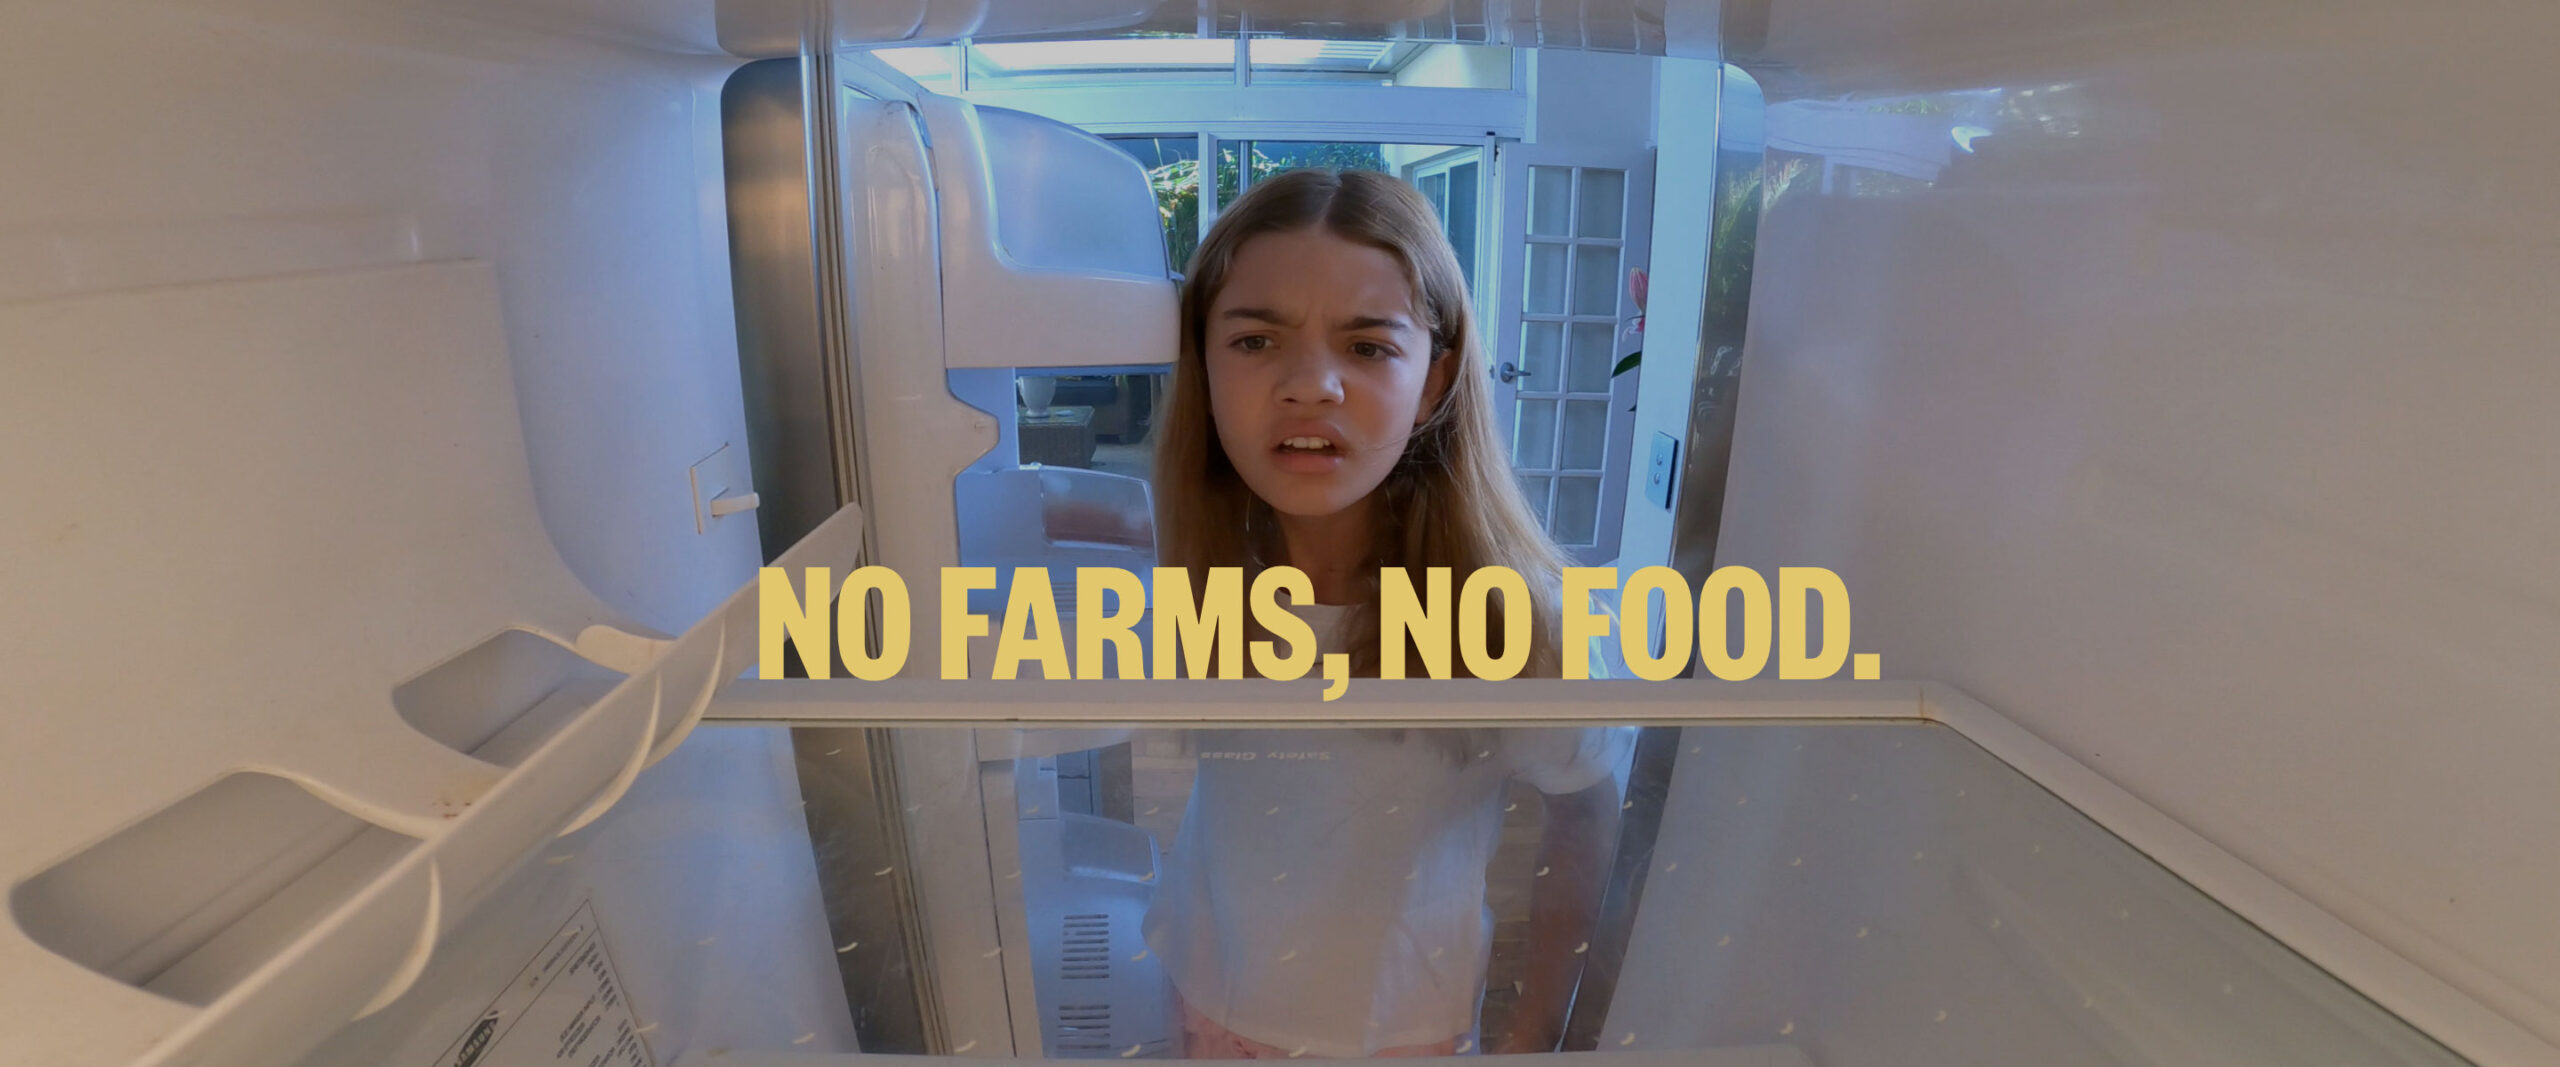 no farms, no food